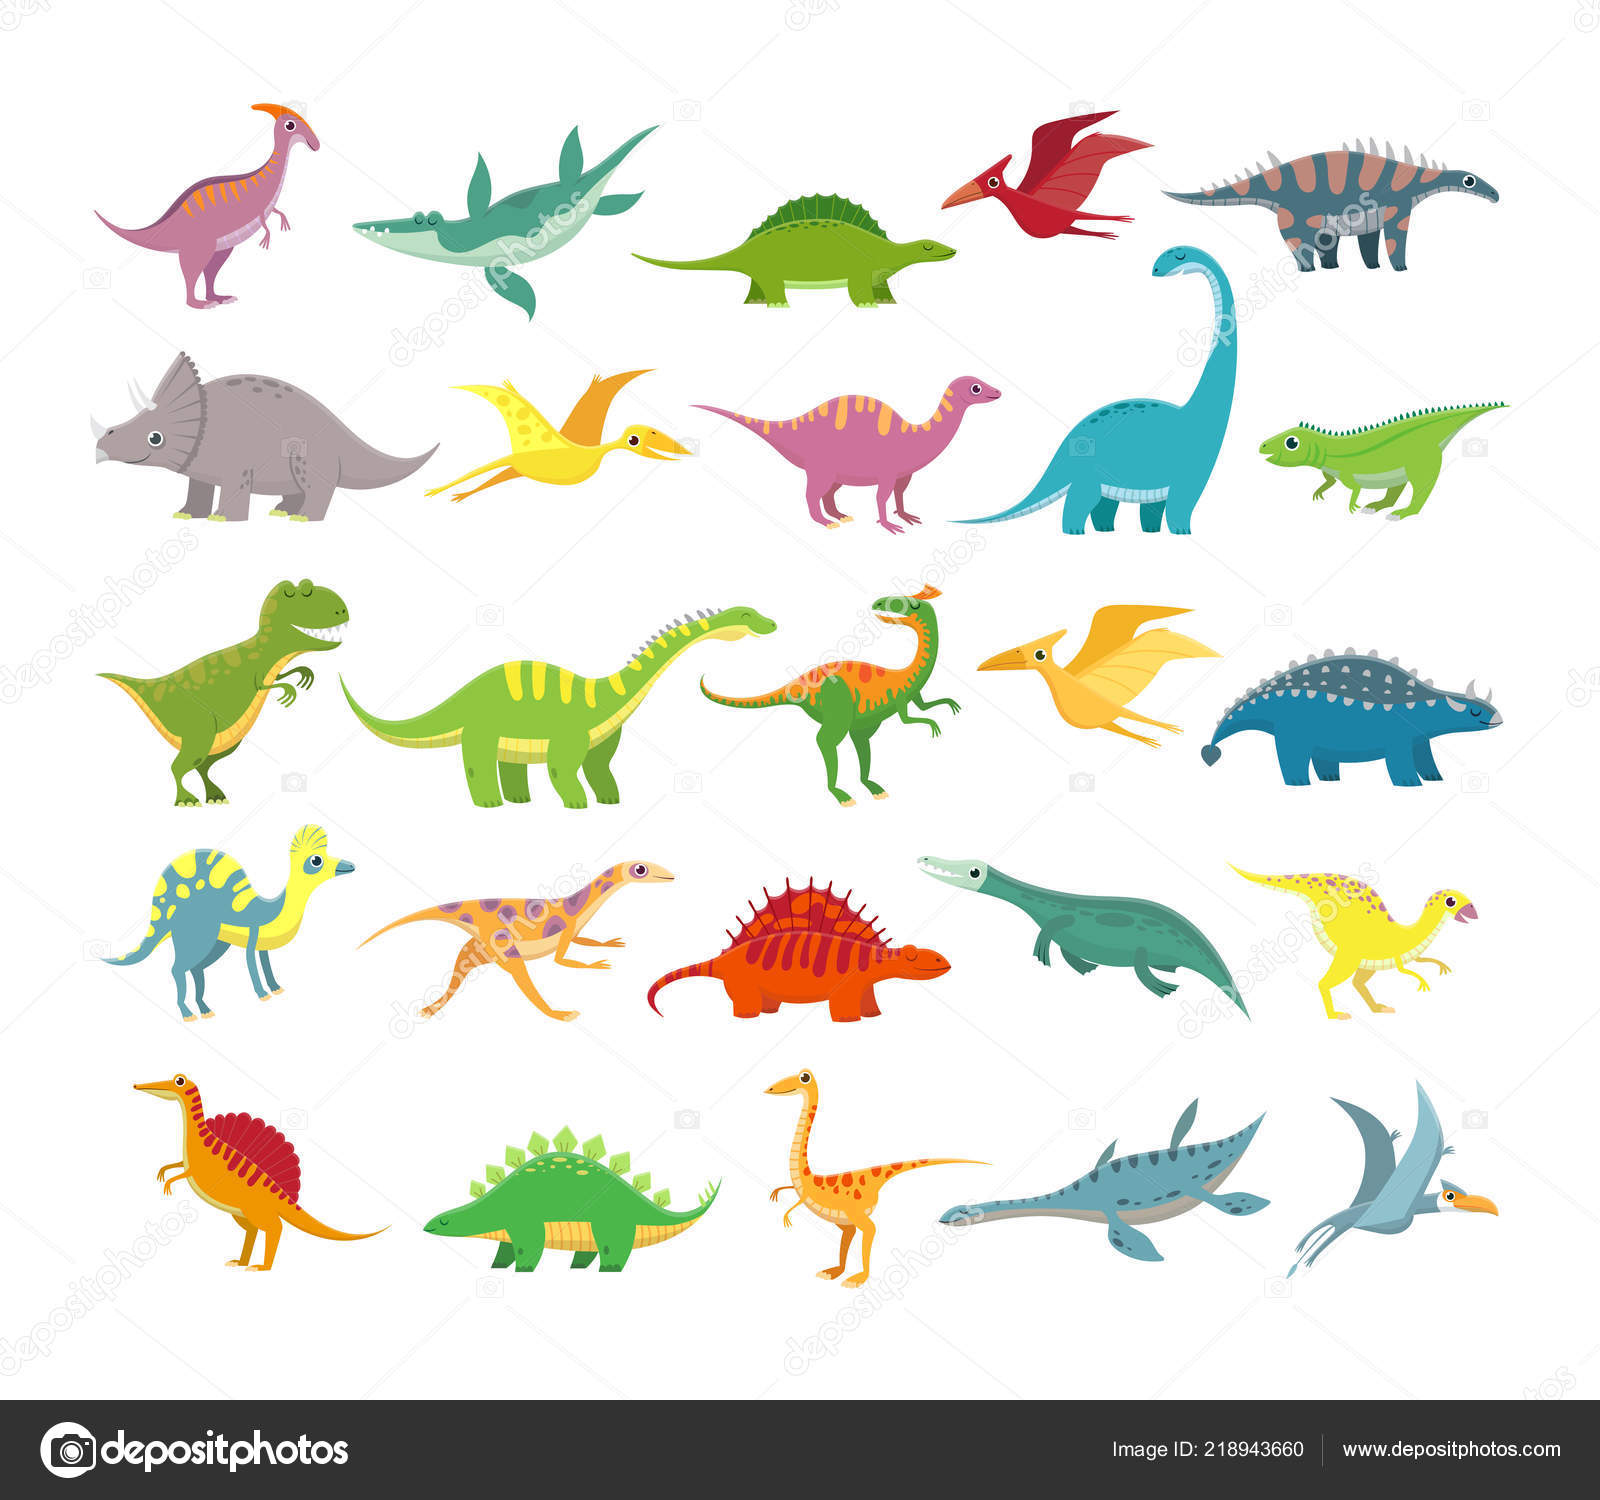 Dinossauros dos desenhos animados. Baby dino animais pré-históricos.  Coleção de vetor de dinossauro bonito imagem vetorial de  tartila.stock.gmail.com© 218943660